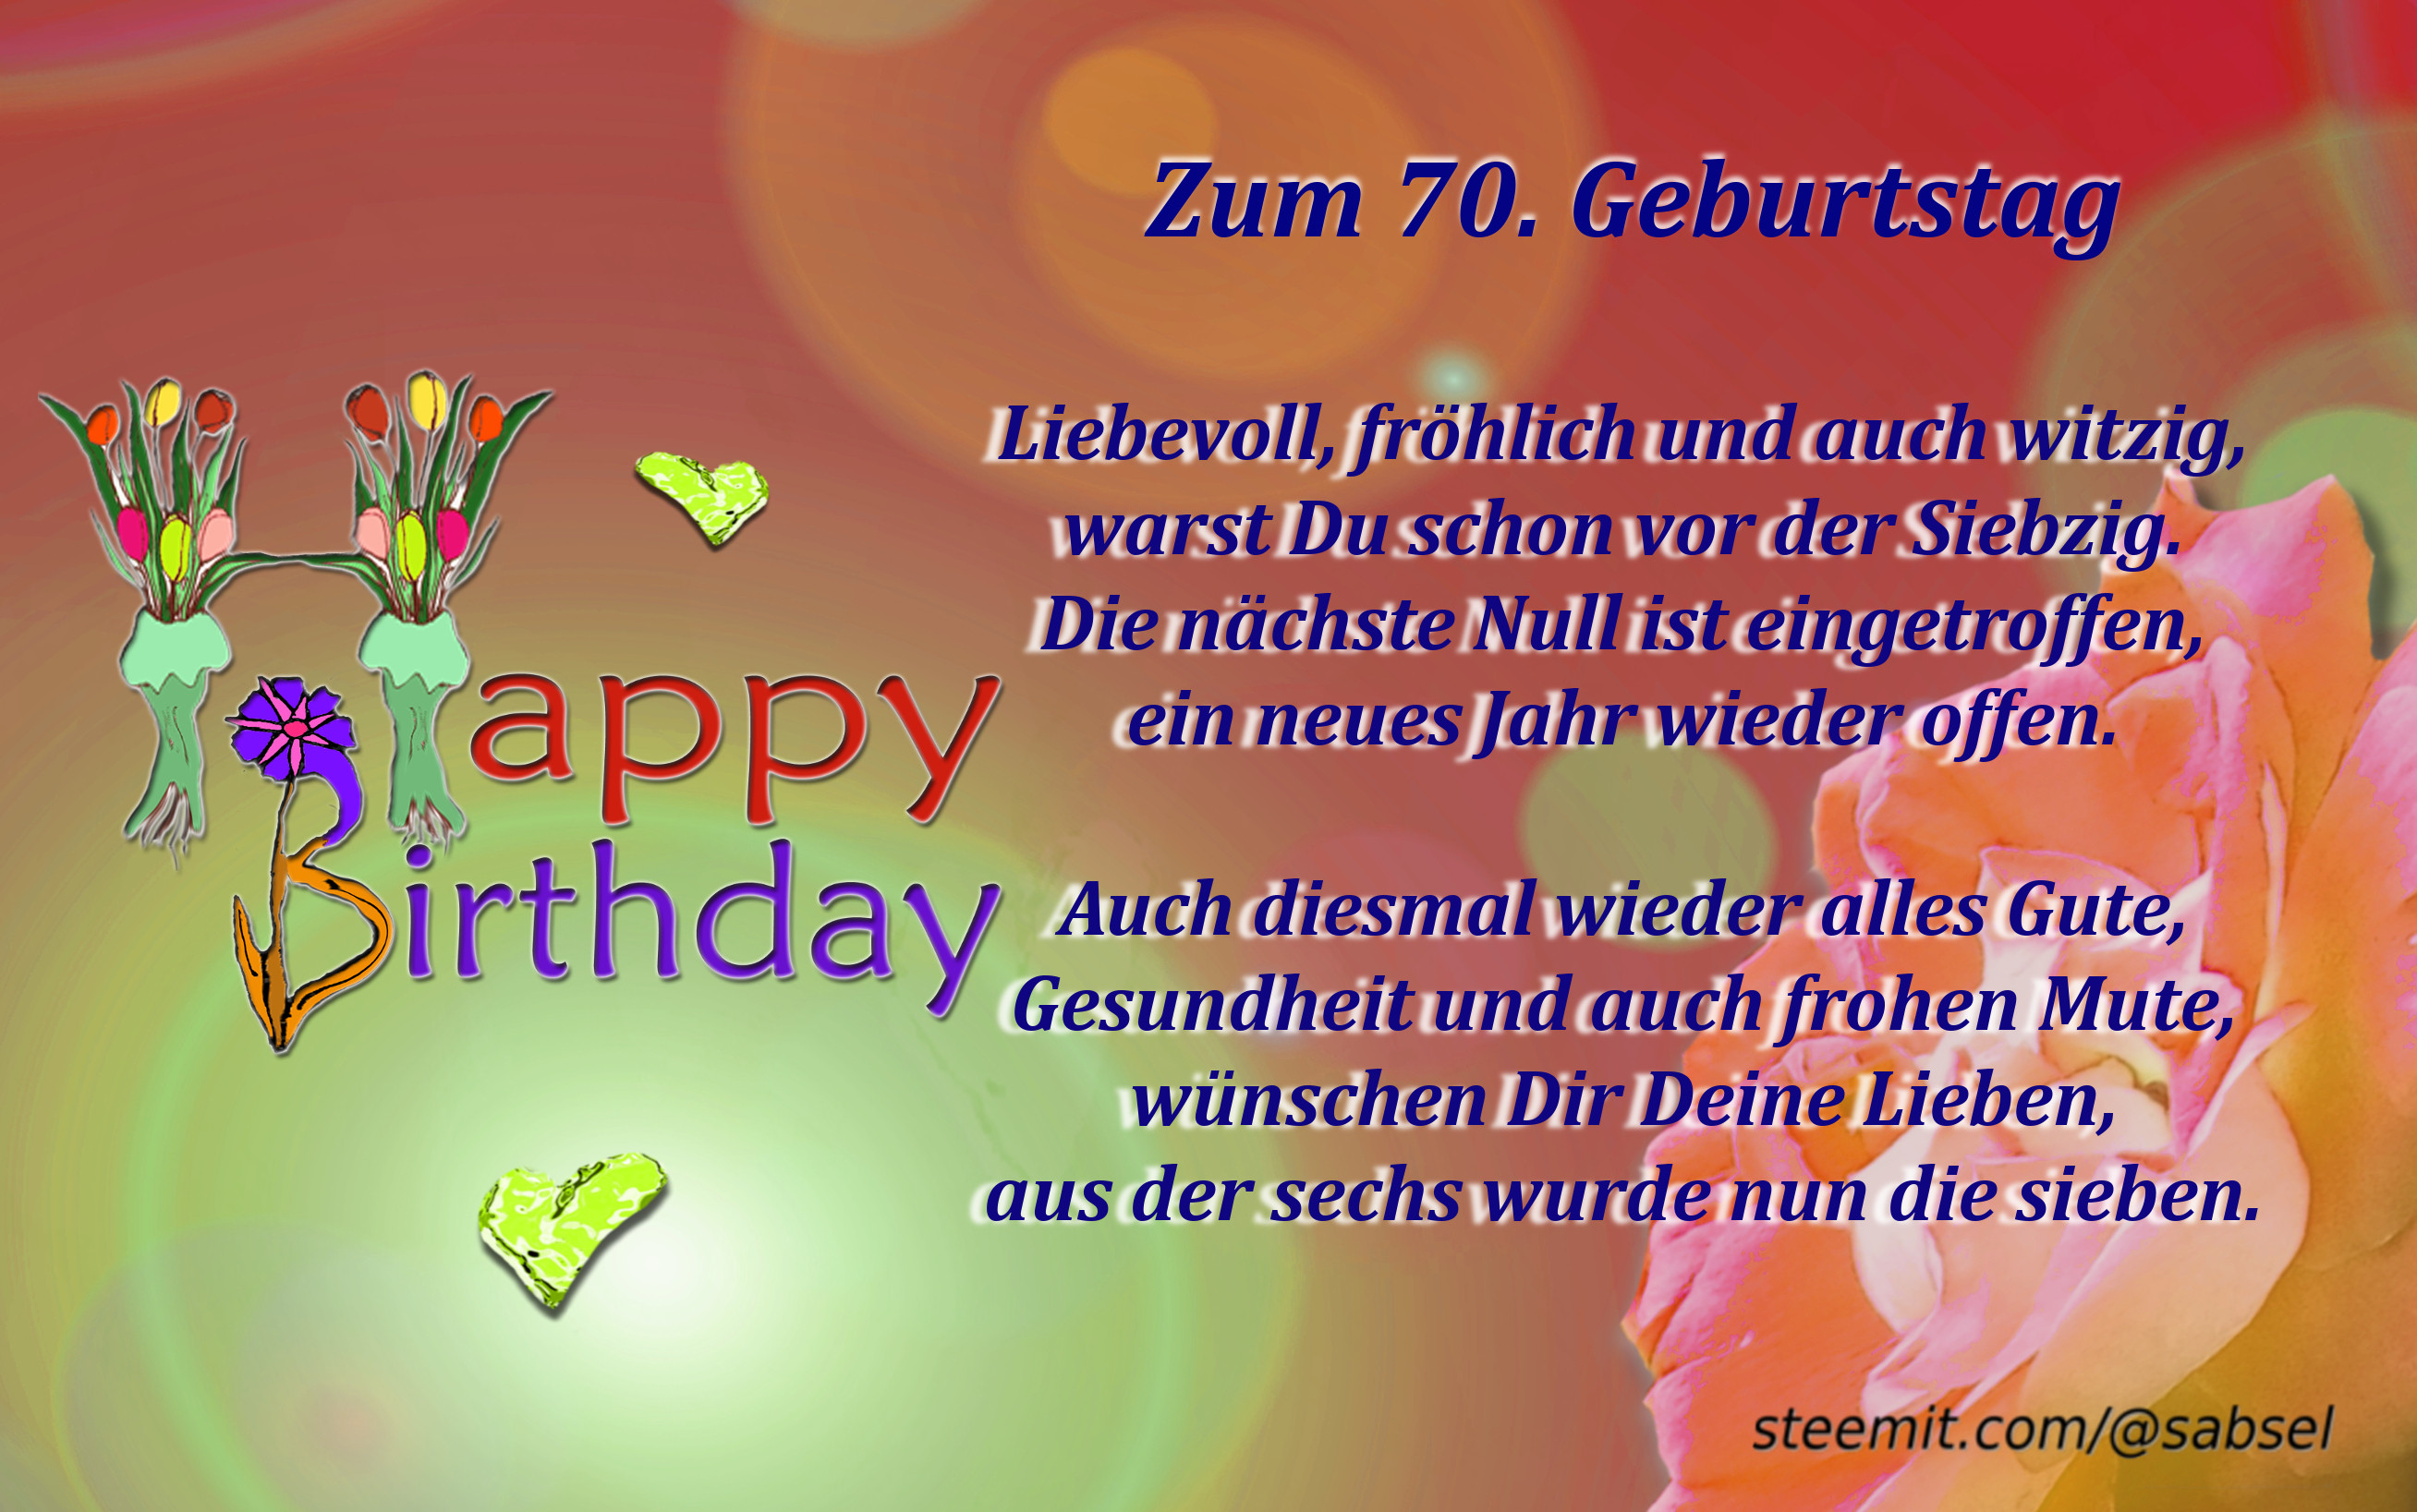 Geburtstagssprüche Zum 70. Geburtstag
 Verse Reime Gedichte von Sabsel Zum 70 Geburtstag — Steemkr